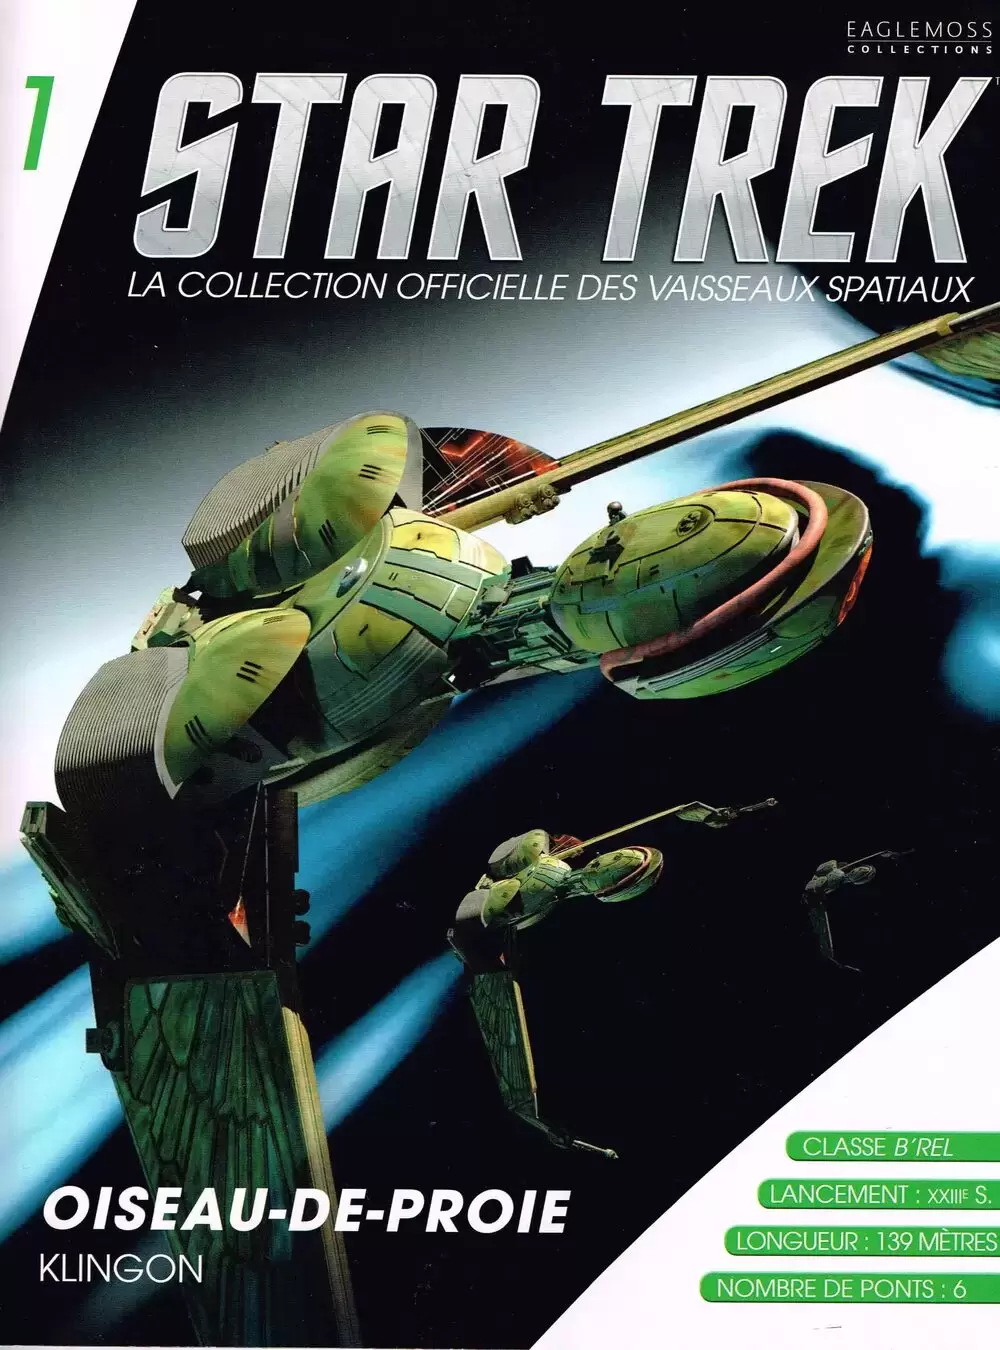 Star Trek - La collection officielle - Oiseau-de-proie klingon